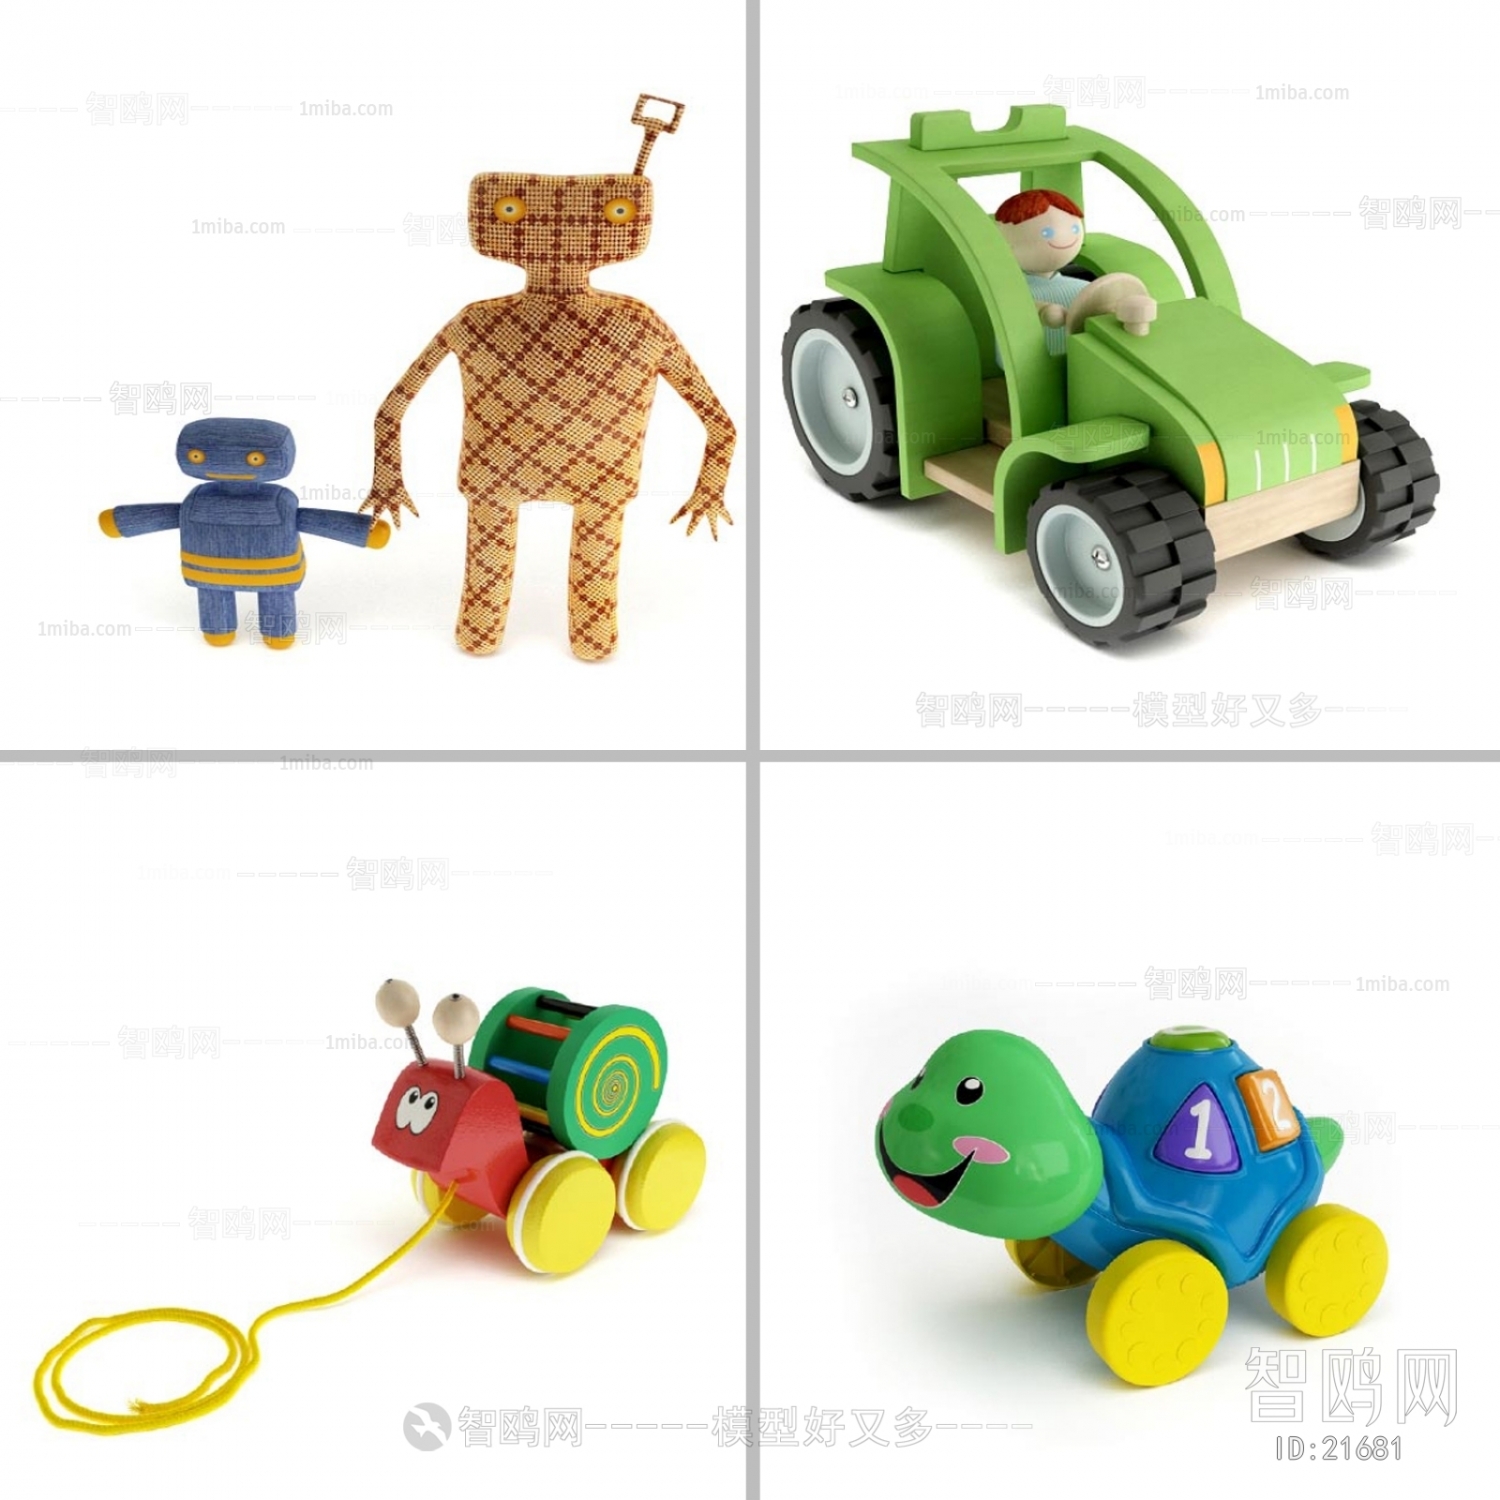 Modern Toys